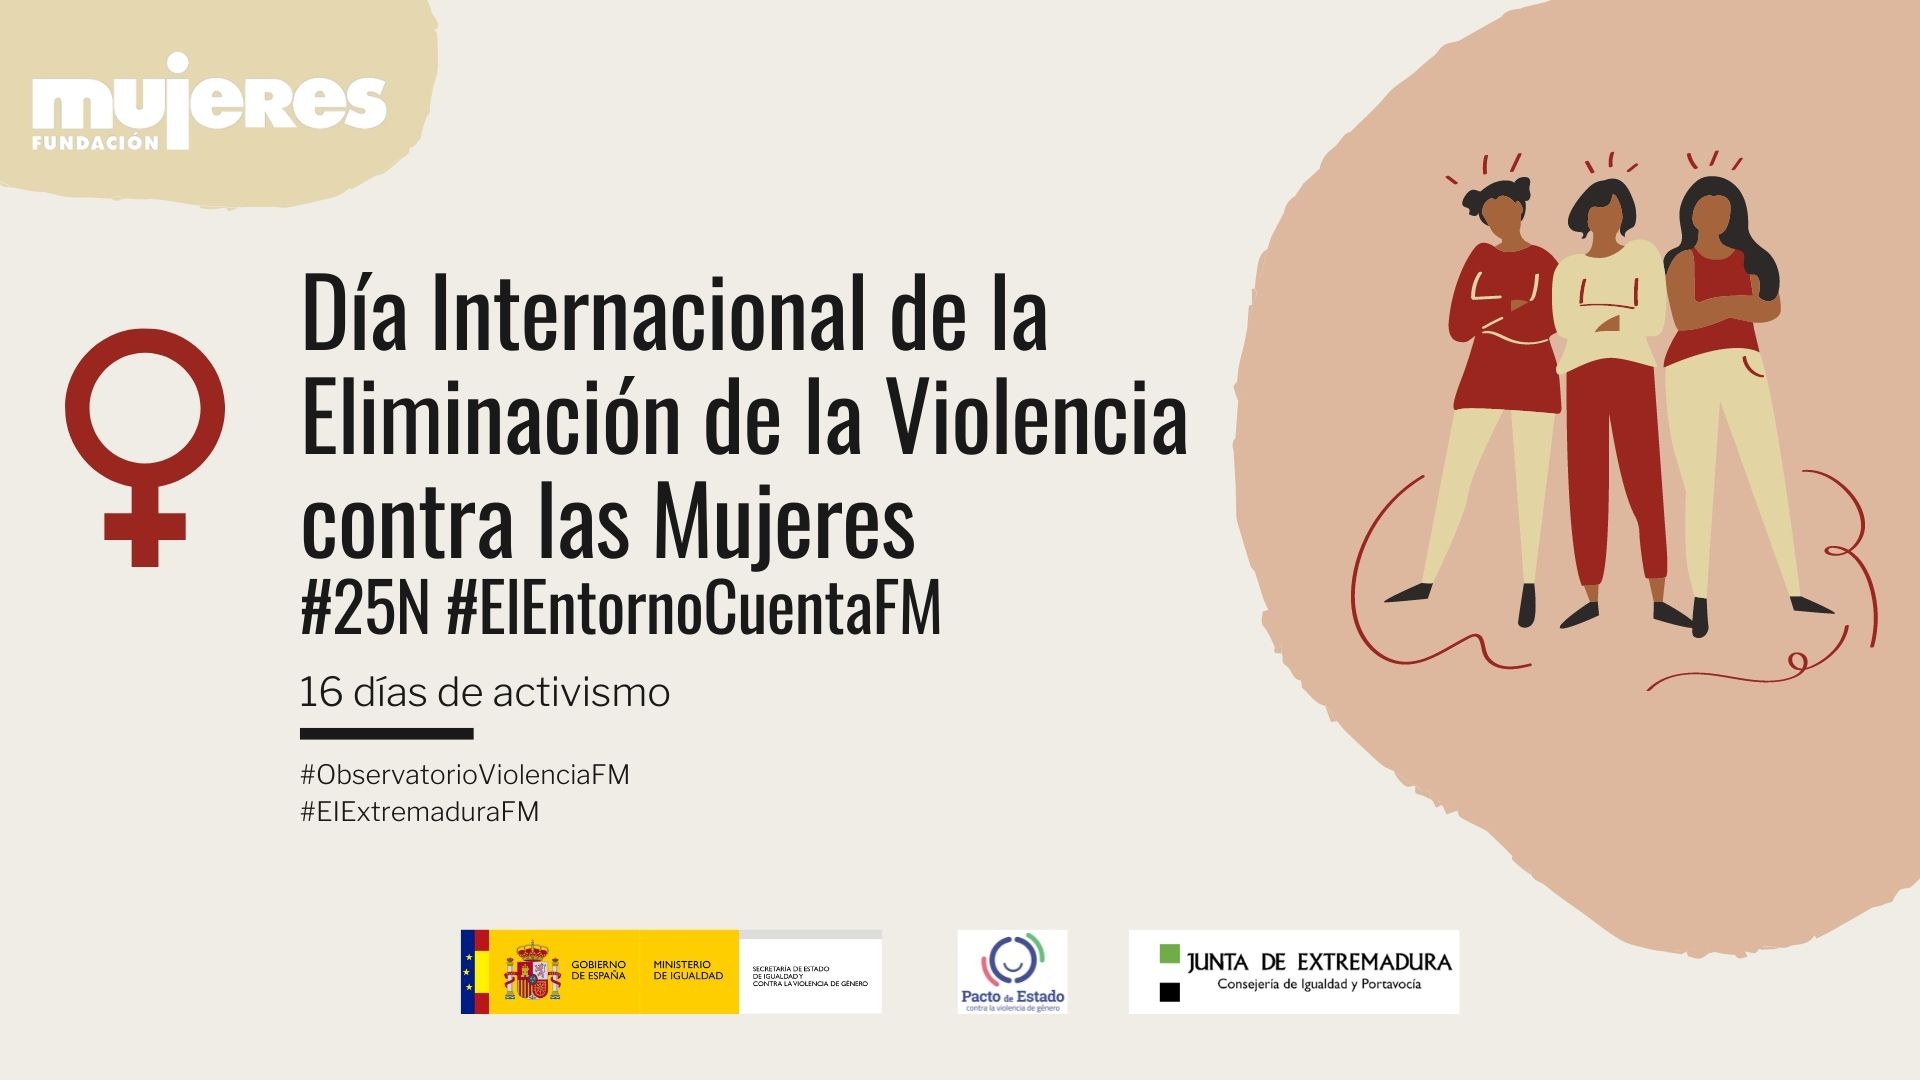 Featured image for “#25N #ElEntornoCuentaFM Cierre de la campaña por el #25N y los 16 días de activismo”